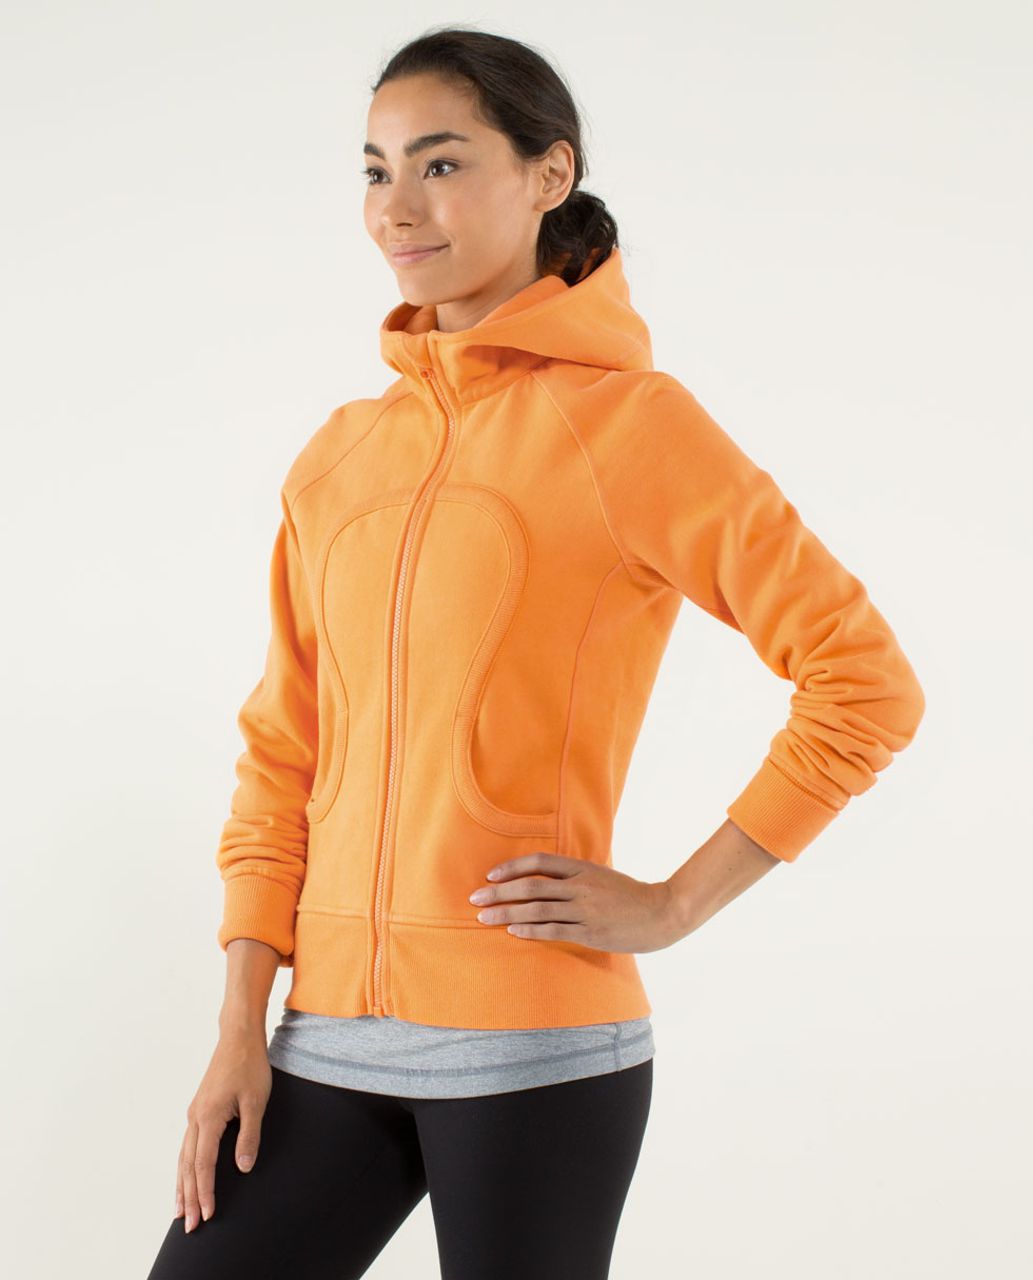 lululemon Athletica Women's Full-Zip Push Your Pace Hoodie Jacket Slim Fit  Size 8 Orange Hoody